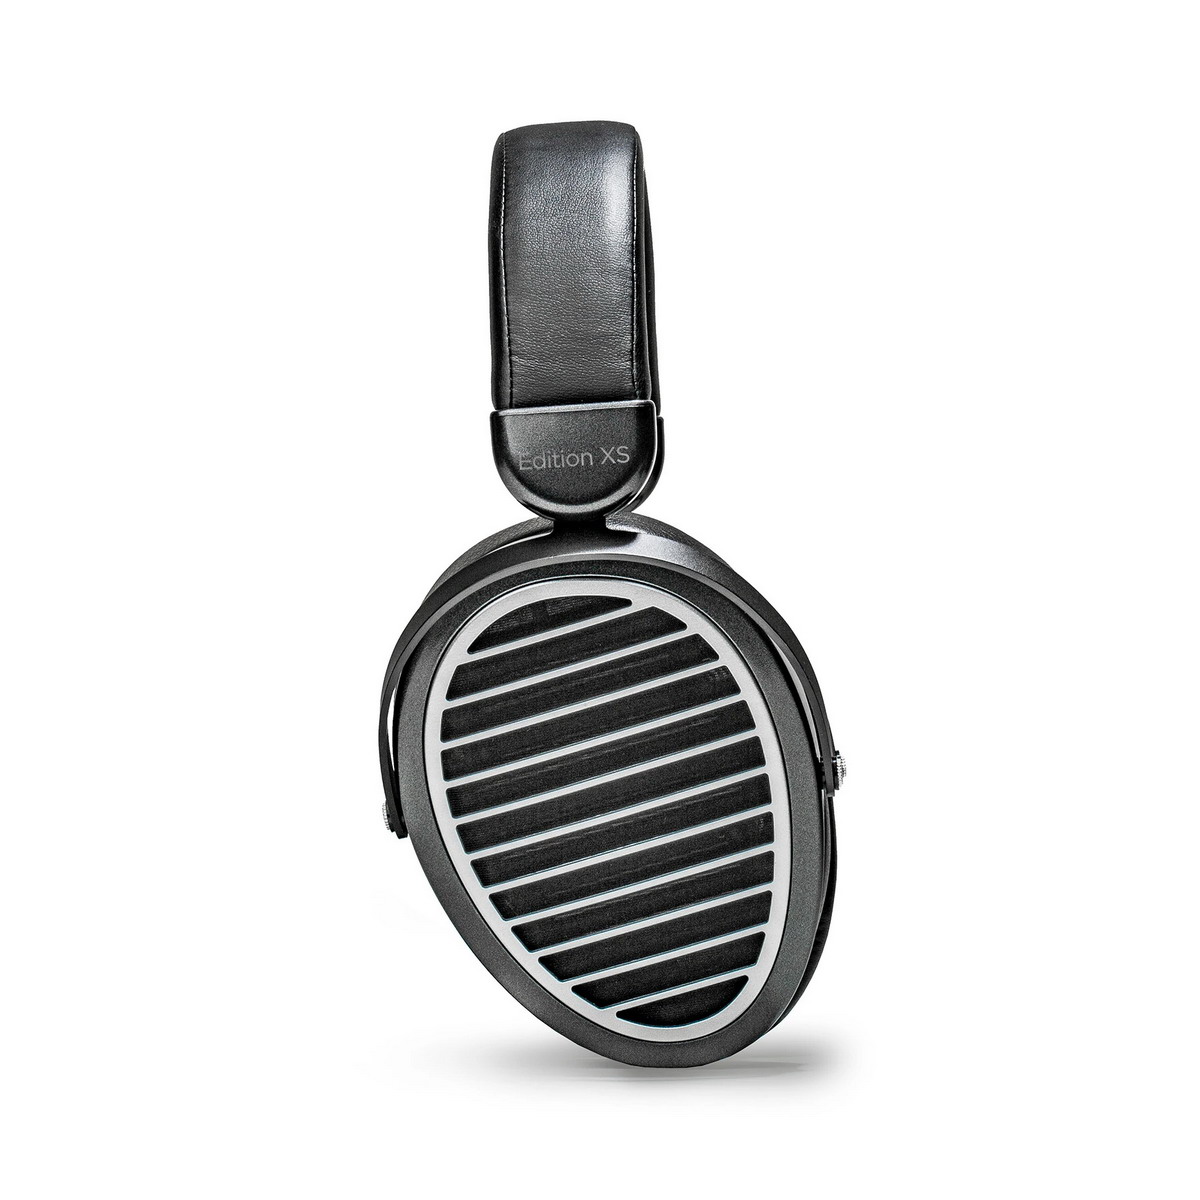 Słuchawki HiFiMAN Edition XS w przedsprzedaży w salonie Q21